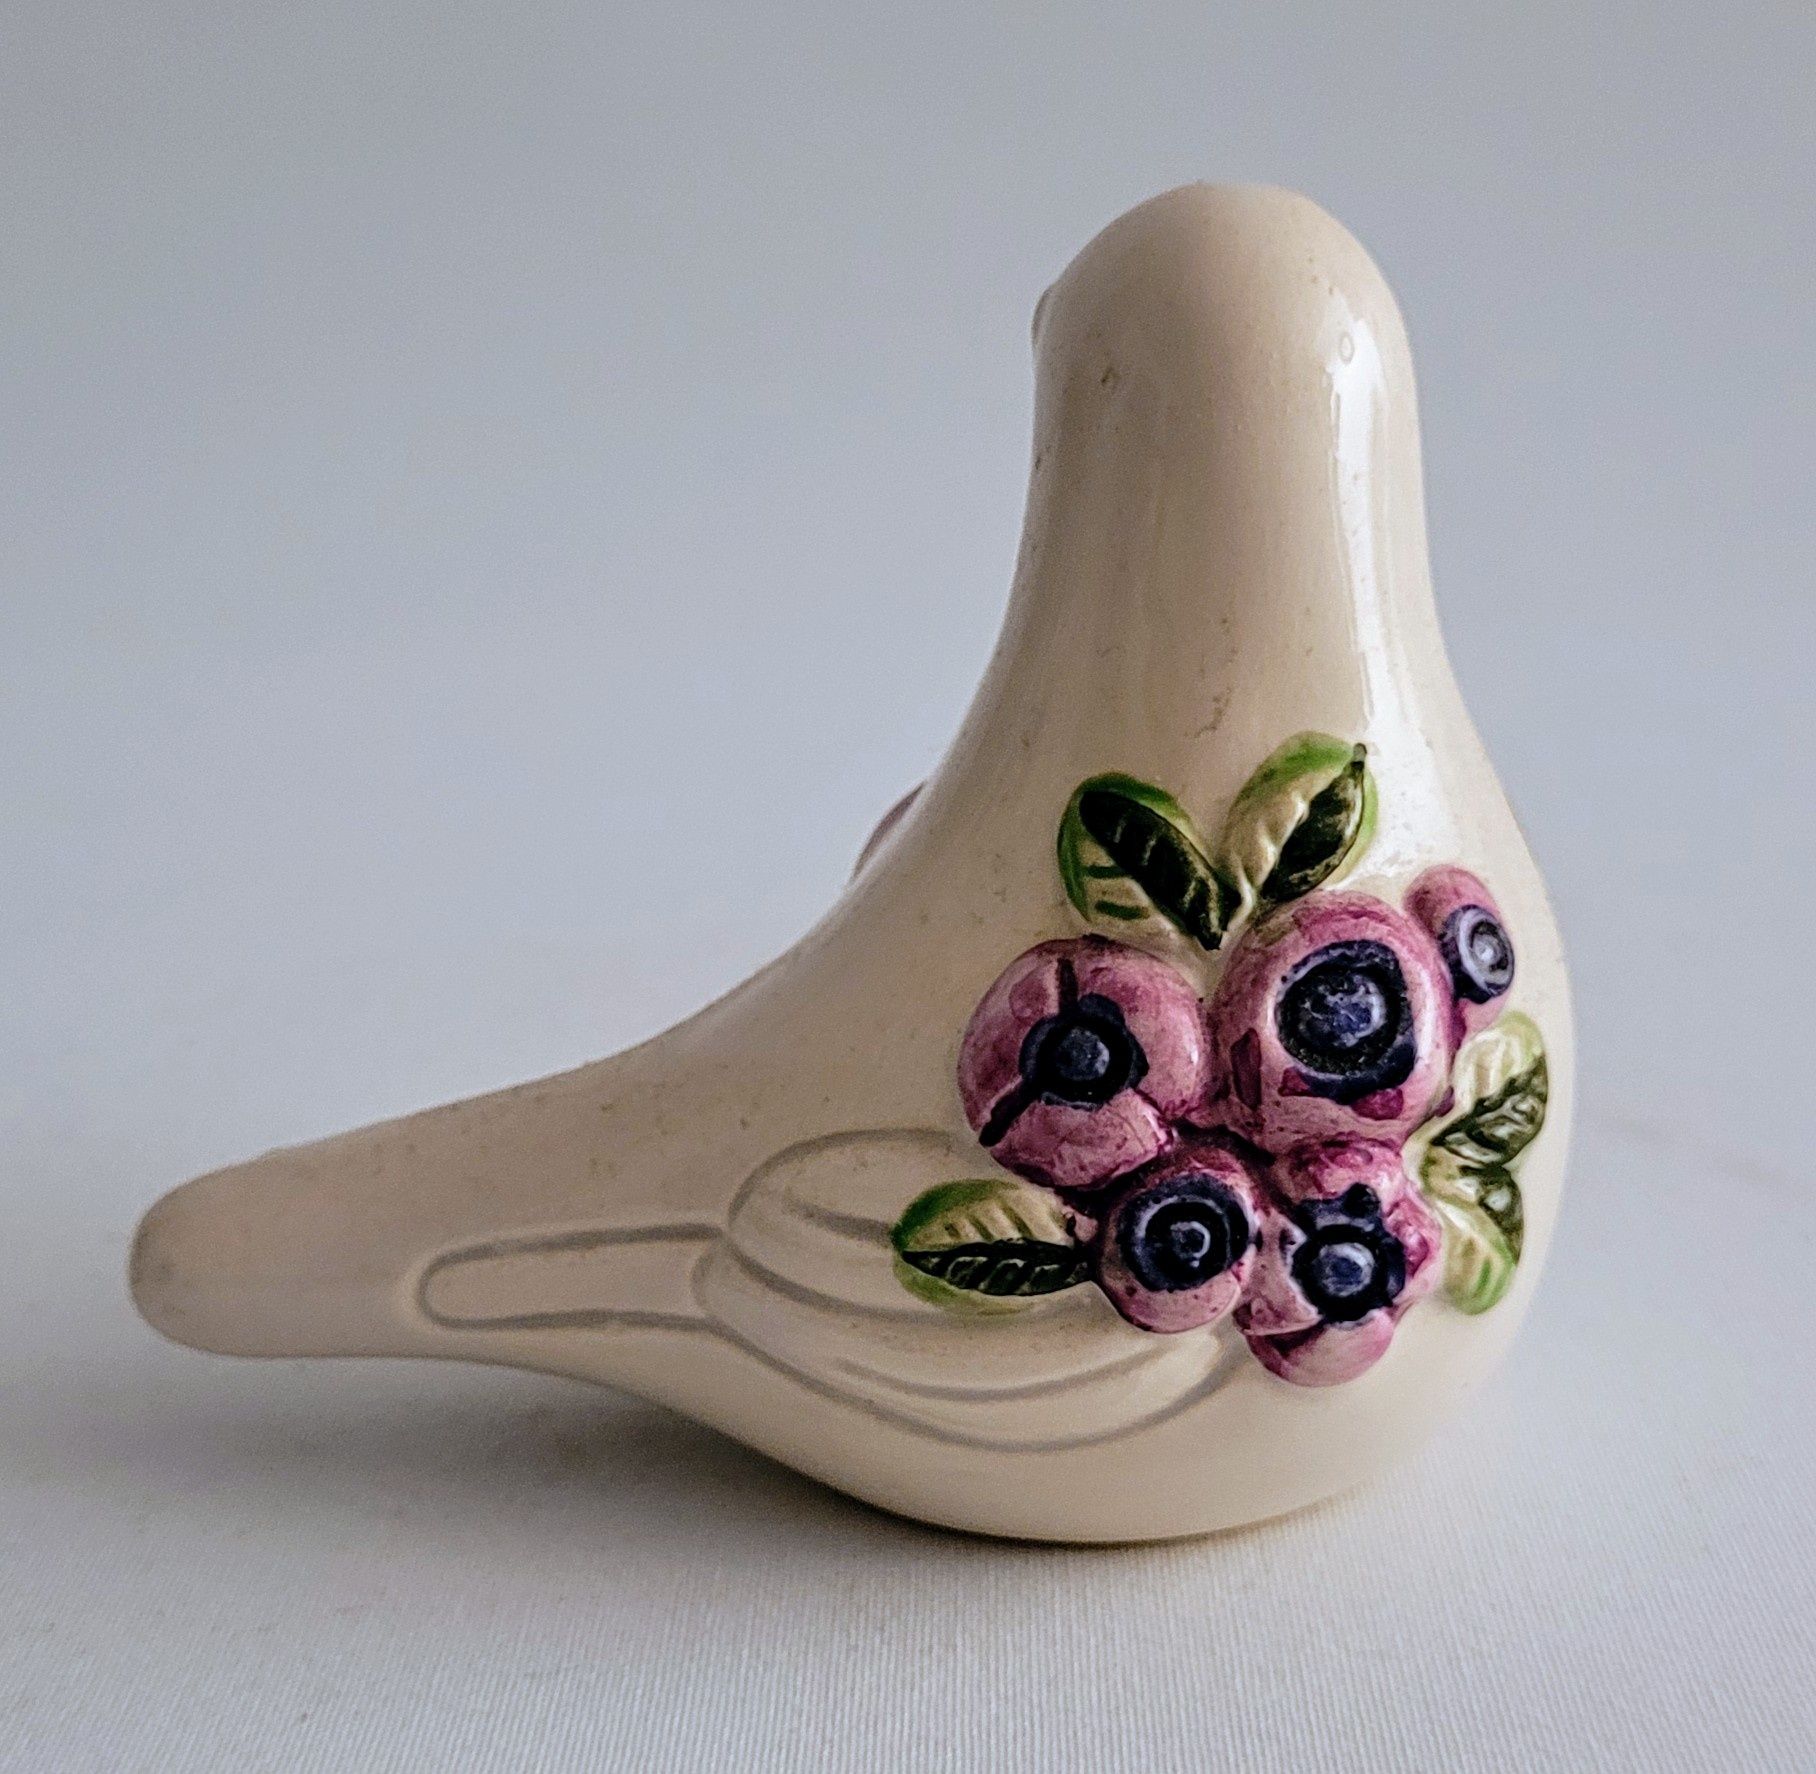 Rosa Ljung ceramiczne figurki ptaków